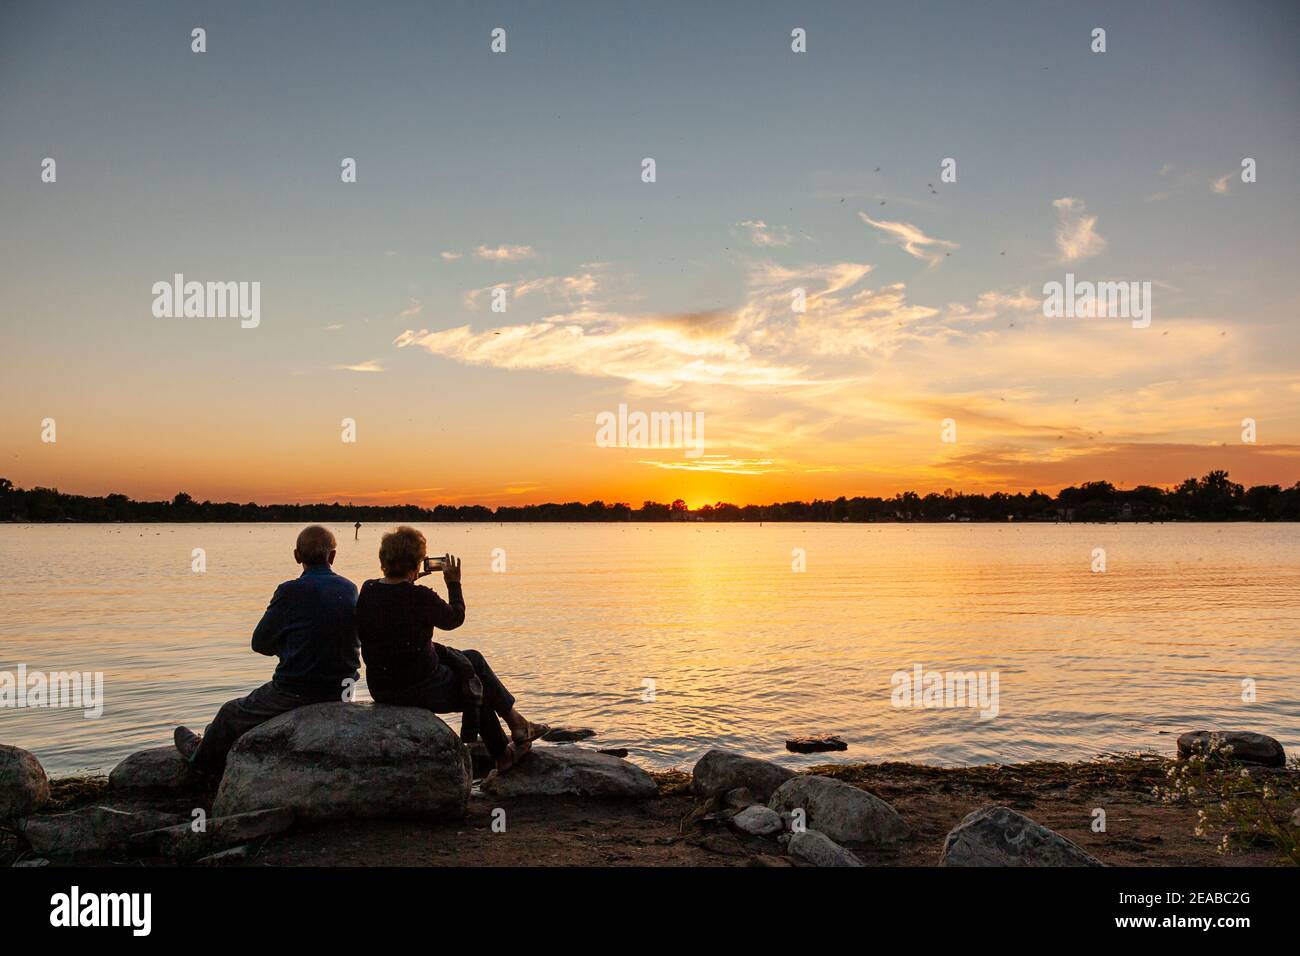 La silueta de una pareja mayor se enfrentó a una preciosa puesta de sol en un lago. Foto de stock